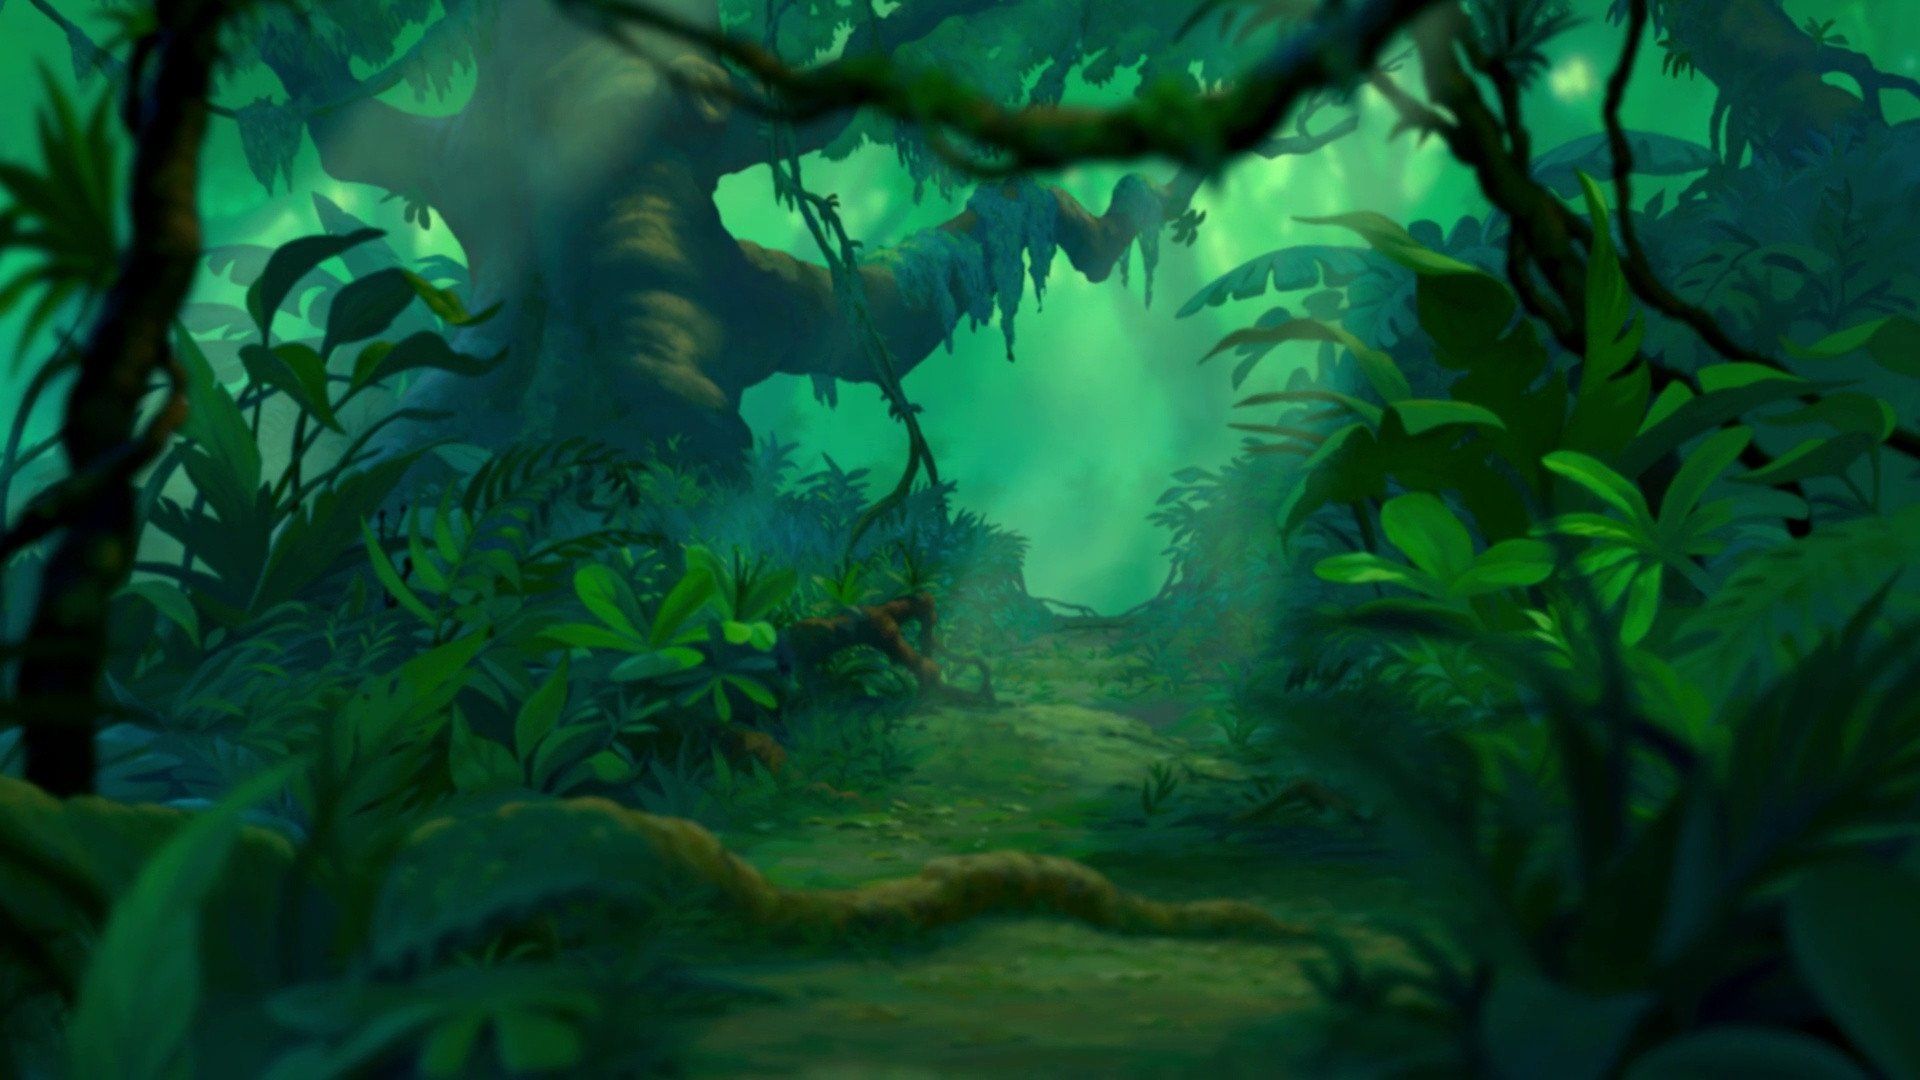 Dschungel Hintergrundbild 1920x1080. Herunterladen 1920x1080 Full HD Hintergrundbilder der könig der löwen disney dschungel landschaft grün 1080p